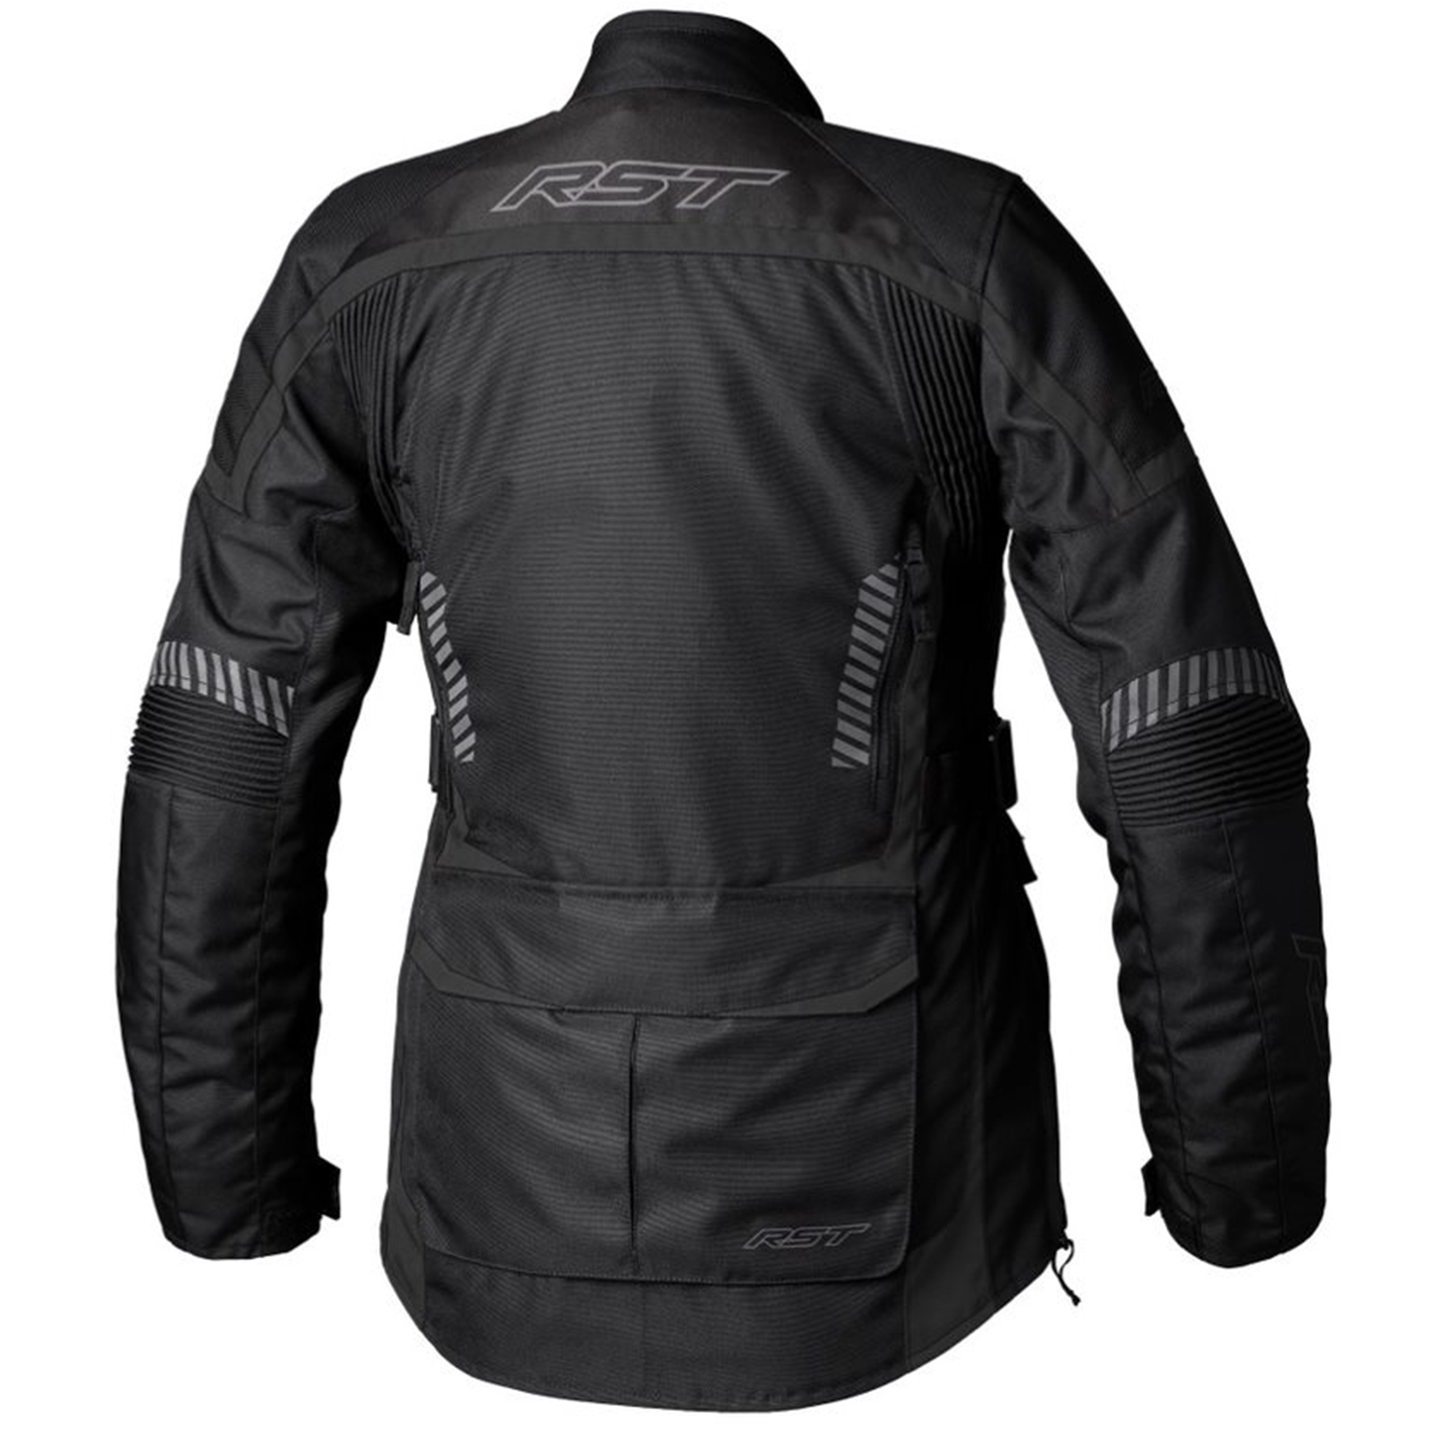 RST Maverick Evo (CE) Ladies Textile Jacket - Black